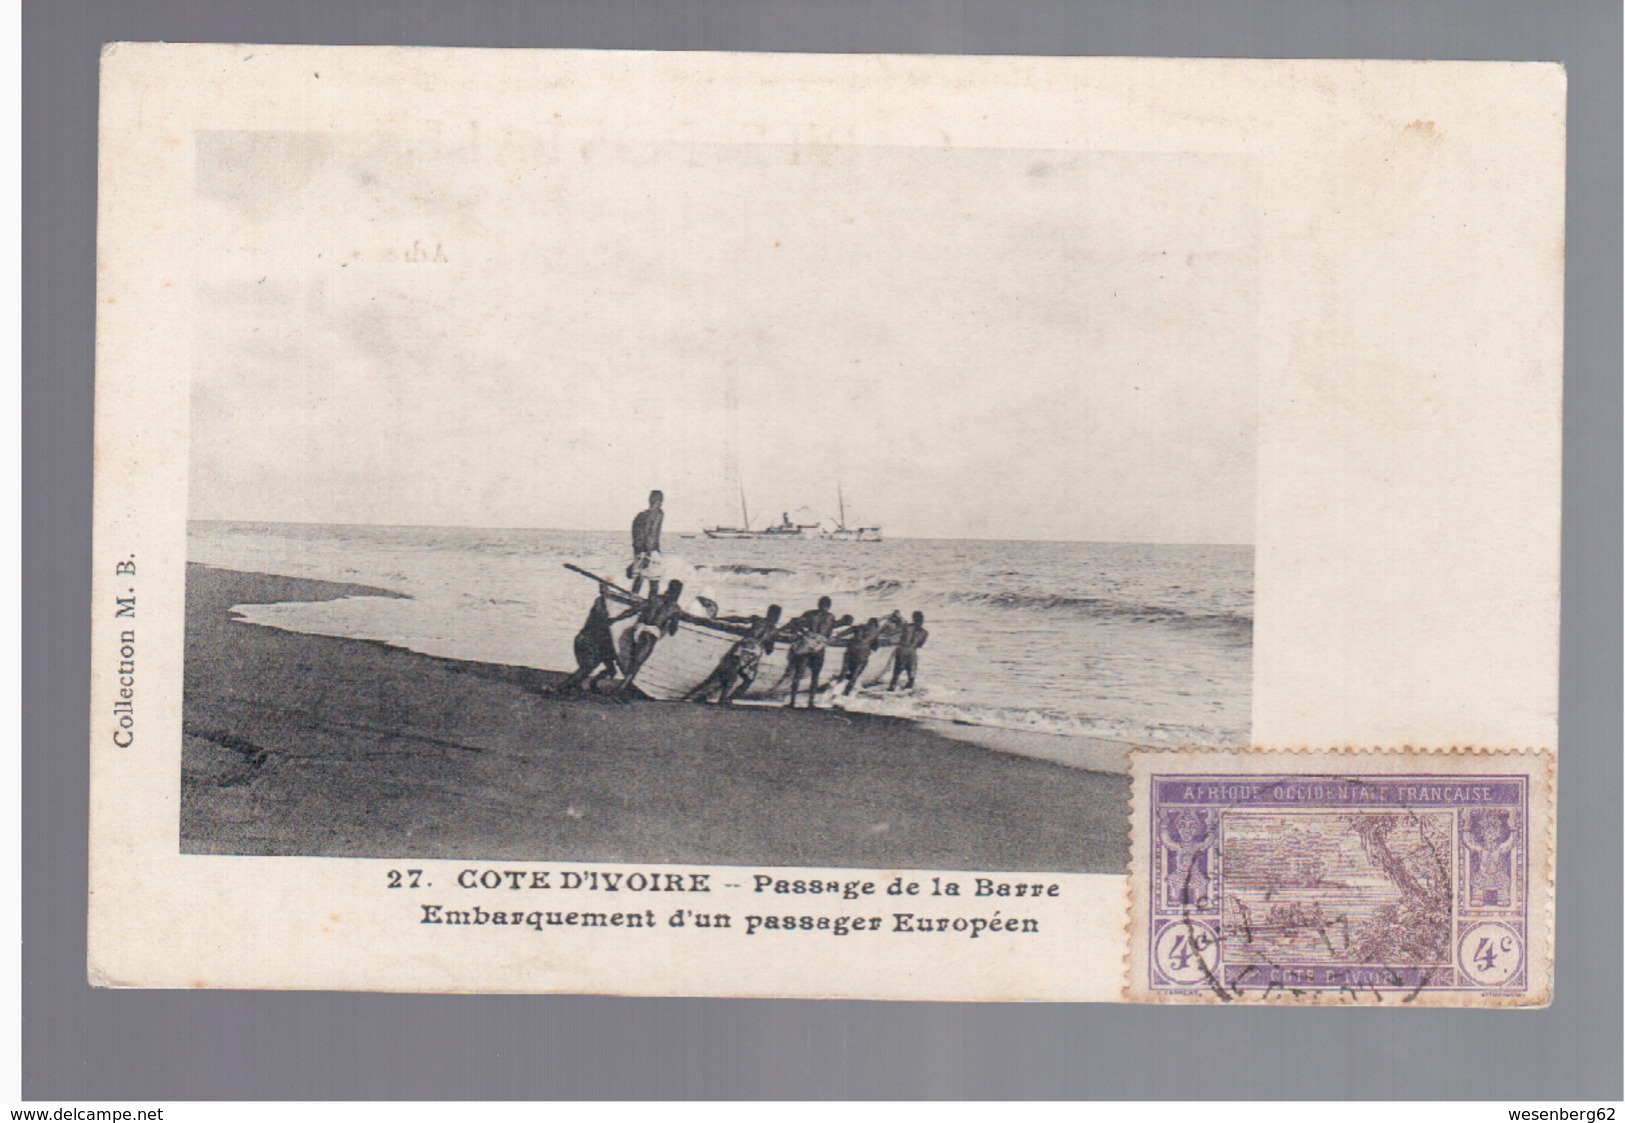 Cote D'Ivoire Passage De La Barre Ca 1910 OLD POSTCARD - Côte-d'Ivoire